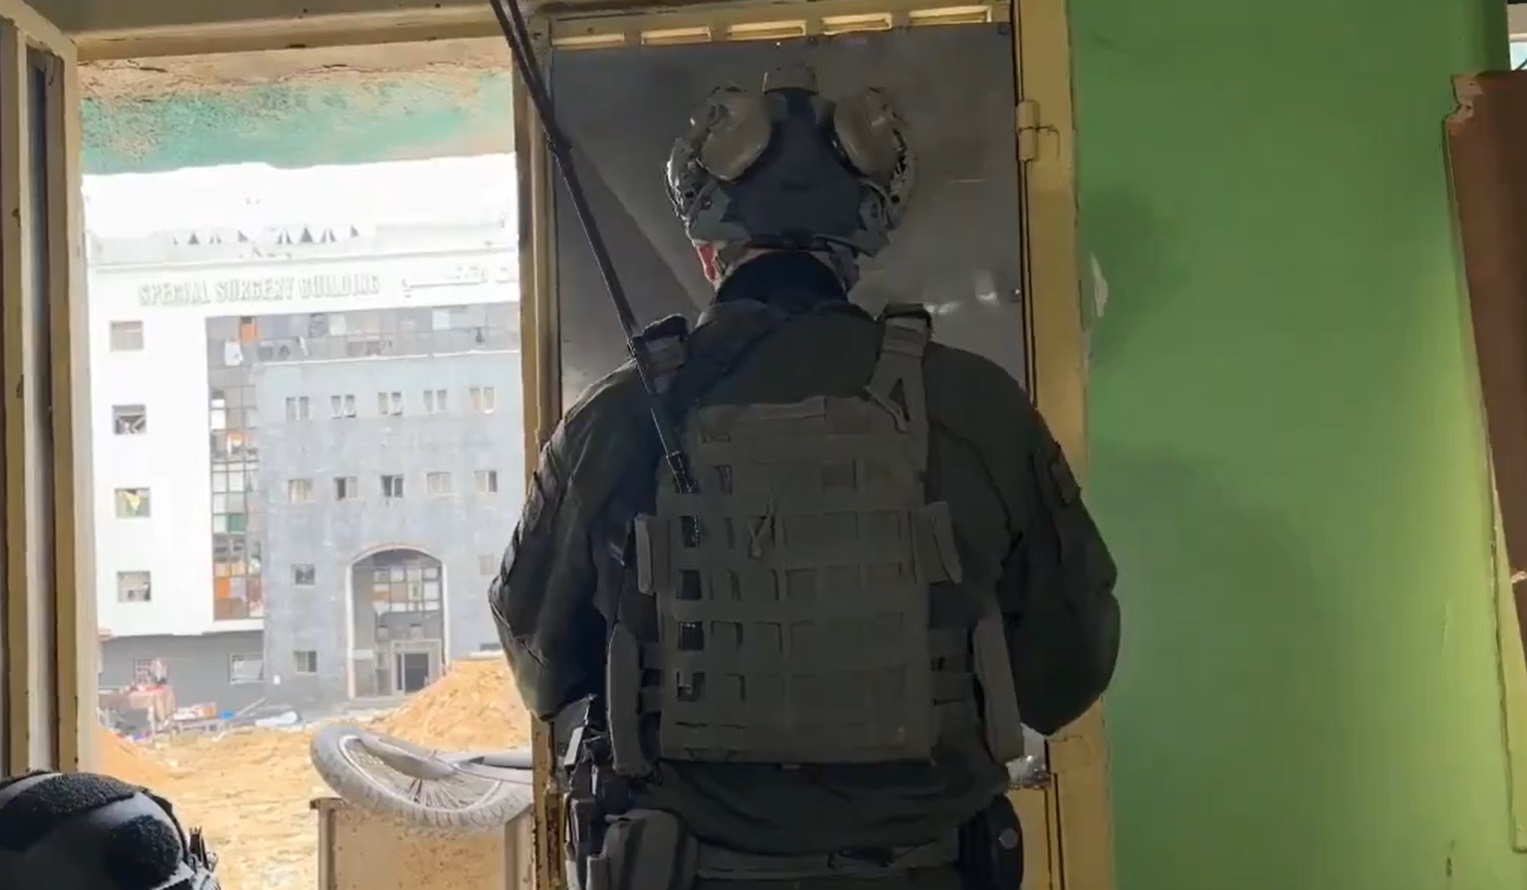 ضابط إسرائيلي يتوعد قادة حماس من داخل مجمع الشفاء ومتحدثا بظهره